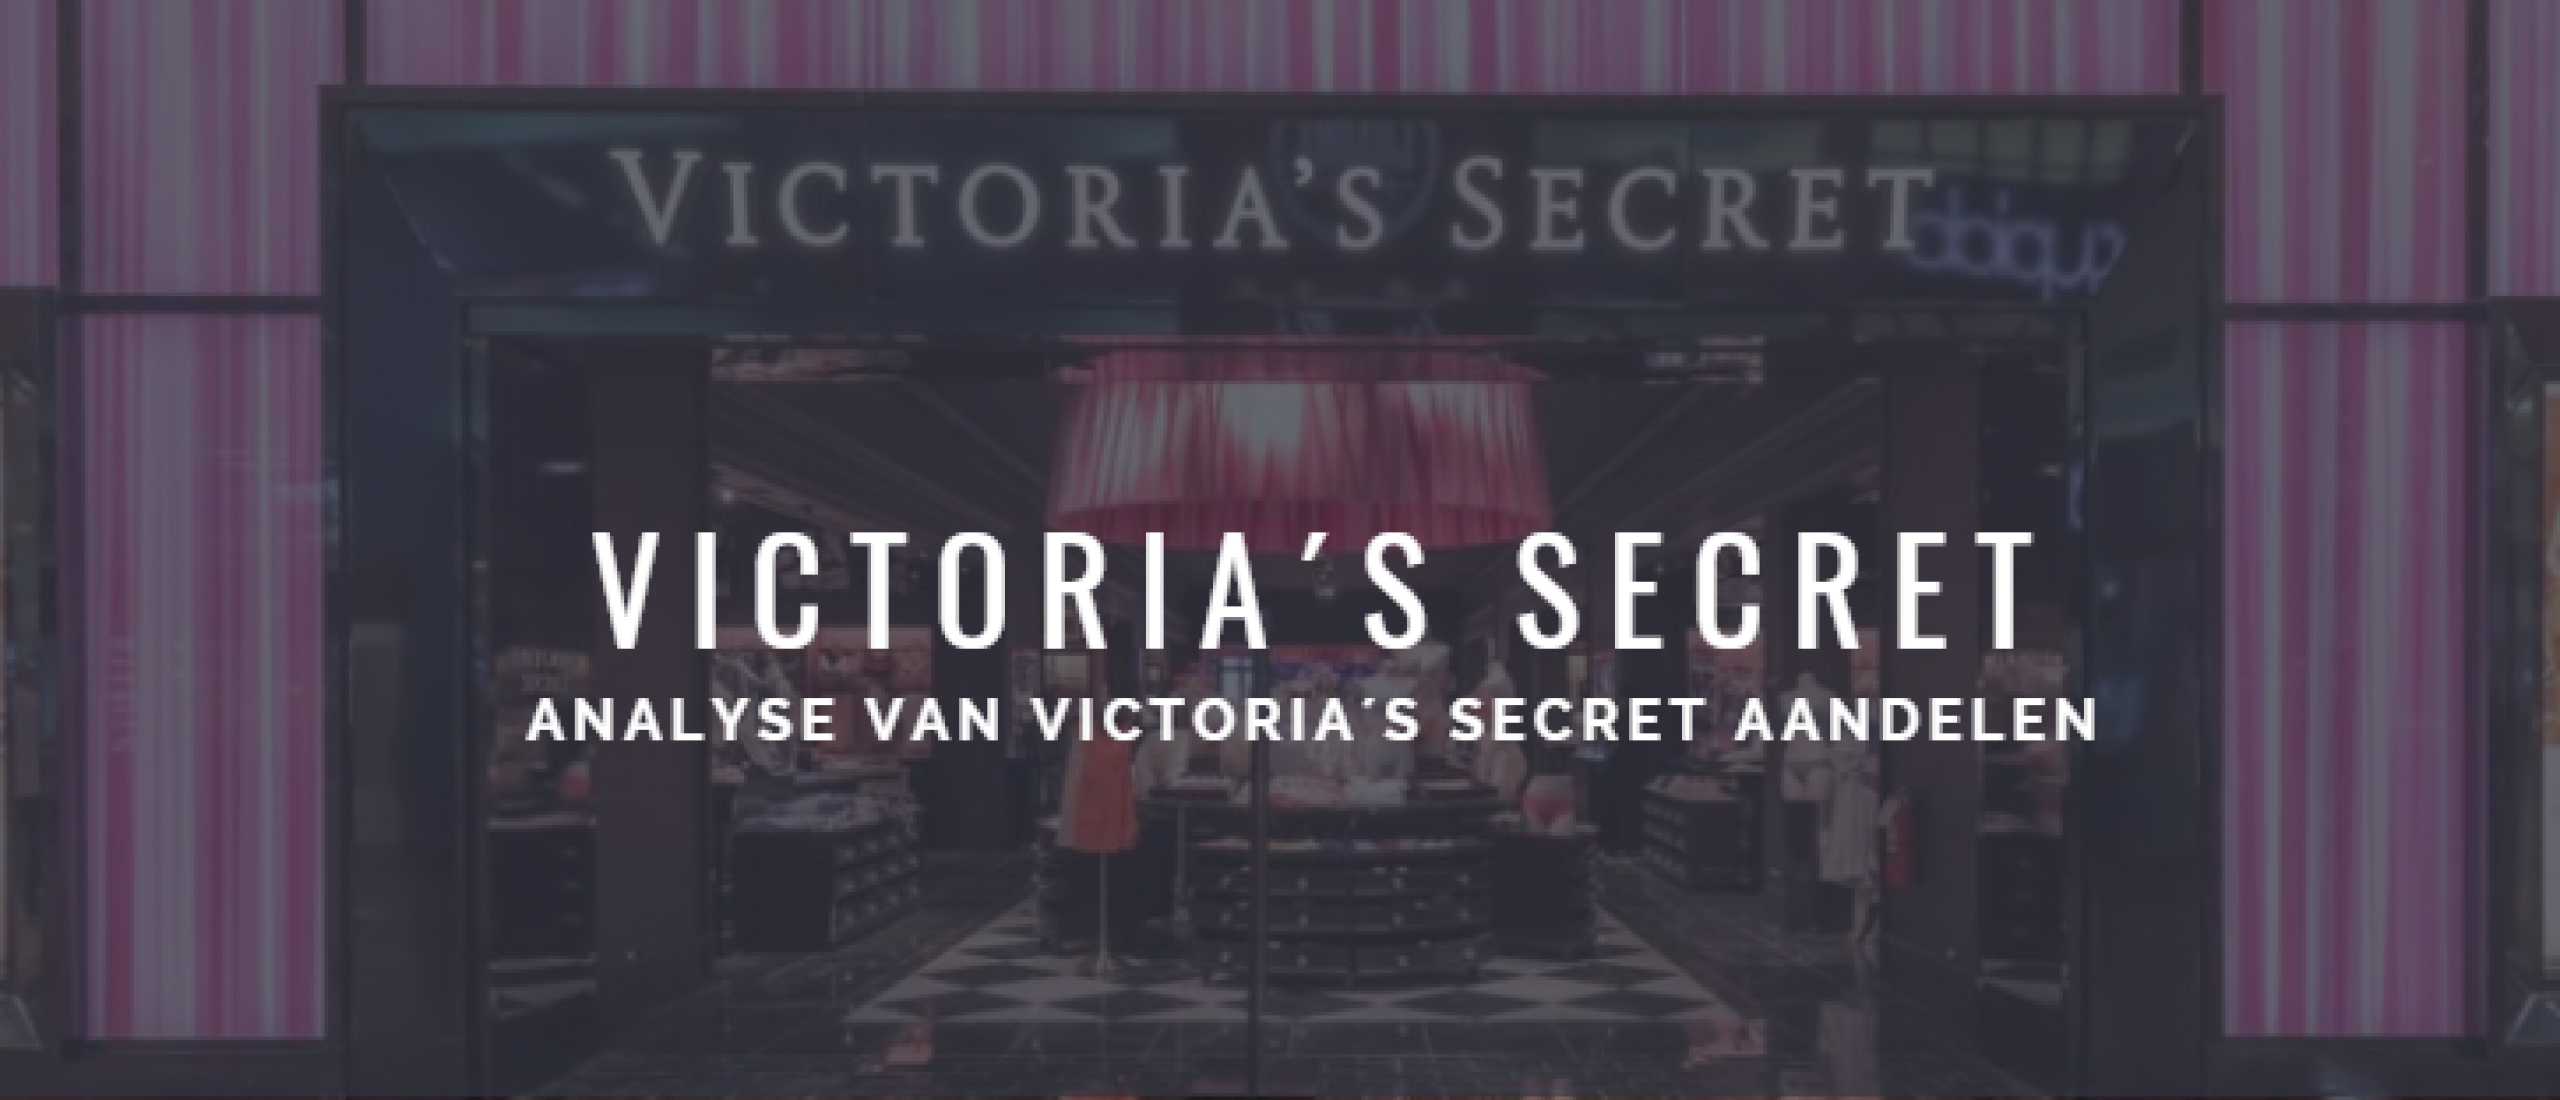 Victoria's Secret Aandelen kopen of niet? Analyse +38% Groei | Happy Investors